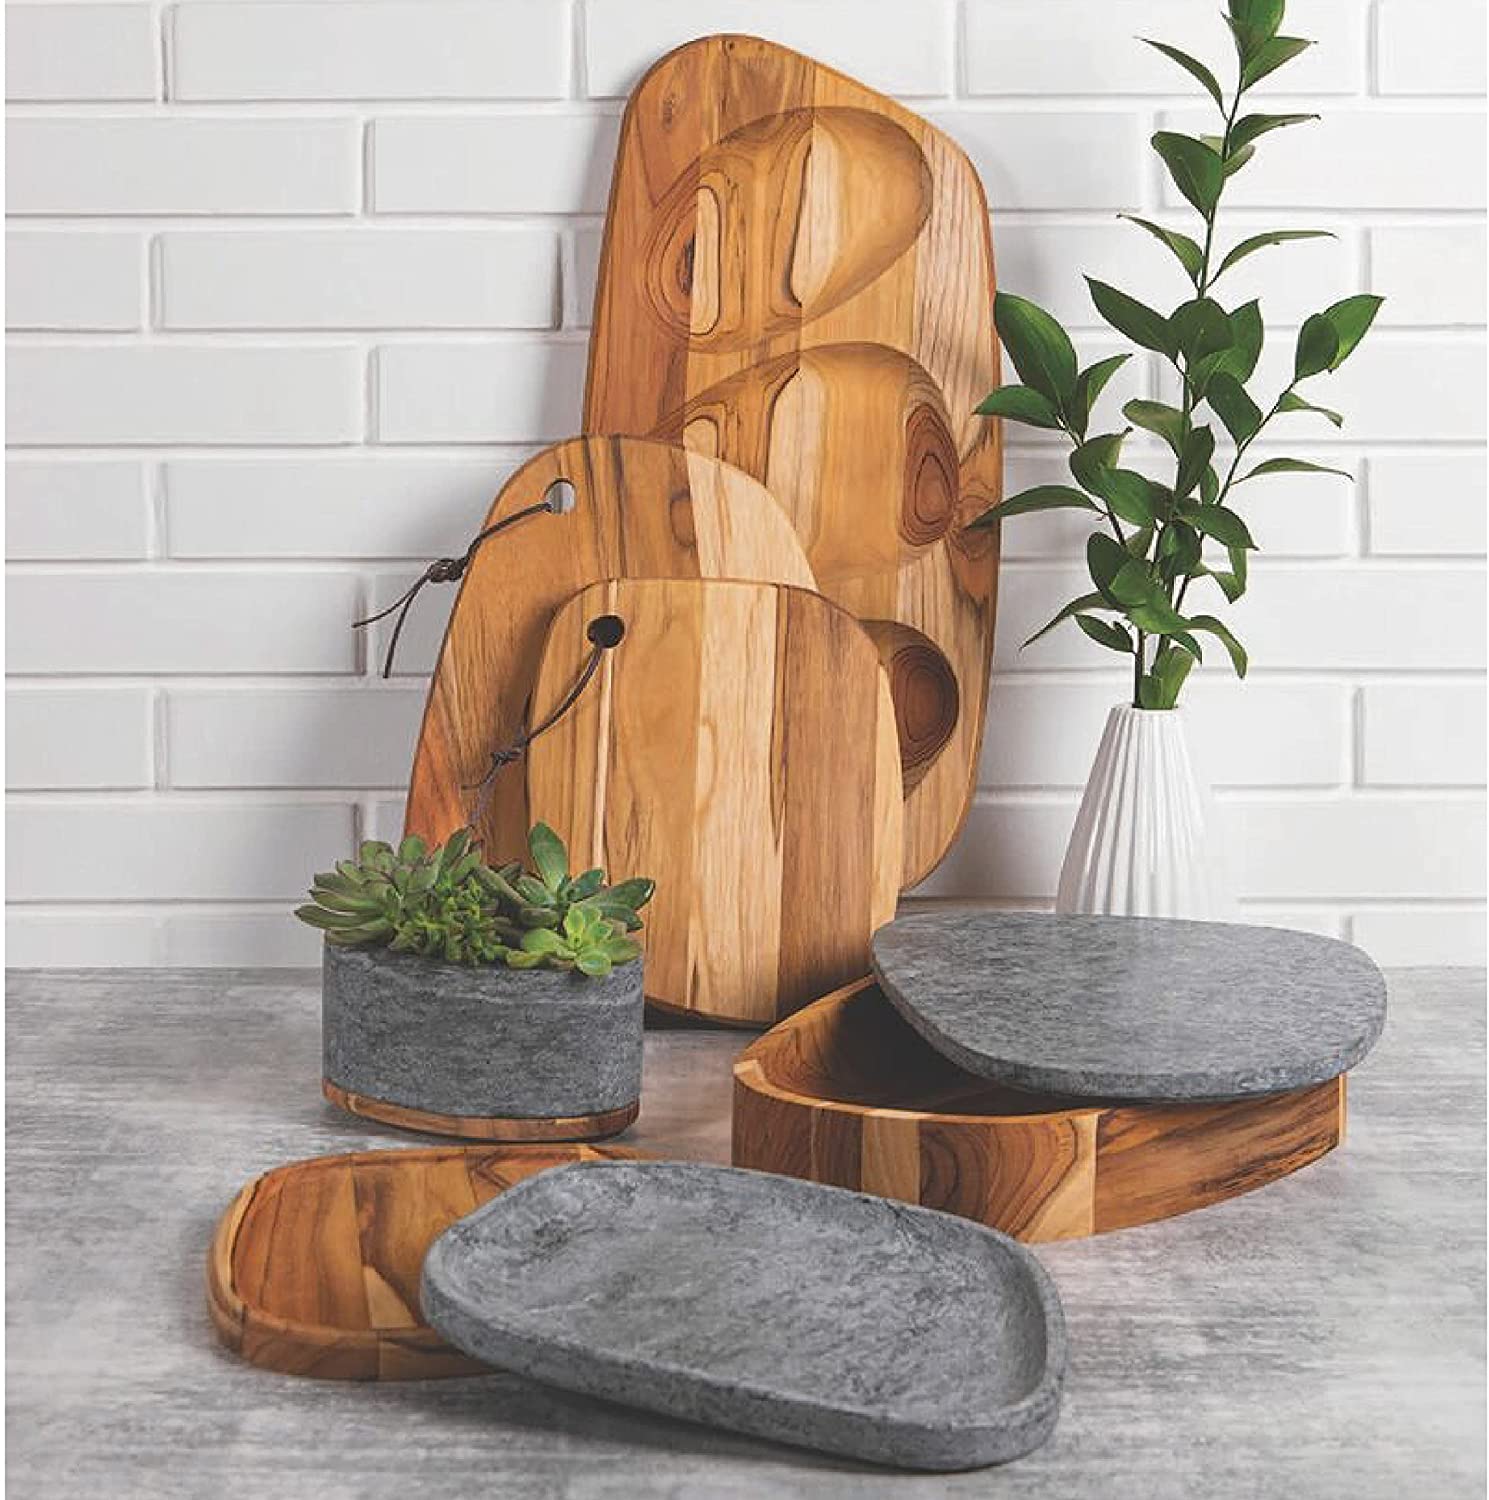 ترامونتينا صينية تقديم بحجم 54 × 24 سم من الخشب الزان بتشطيب بالزيت كونكريتا